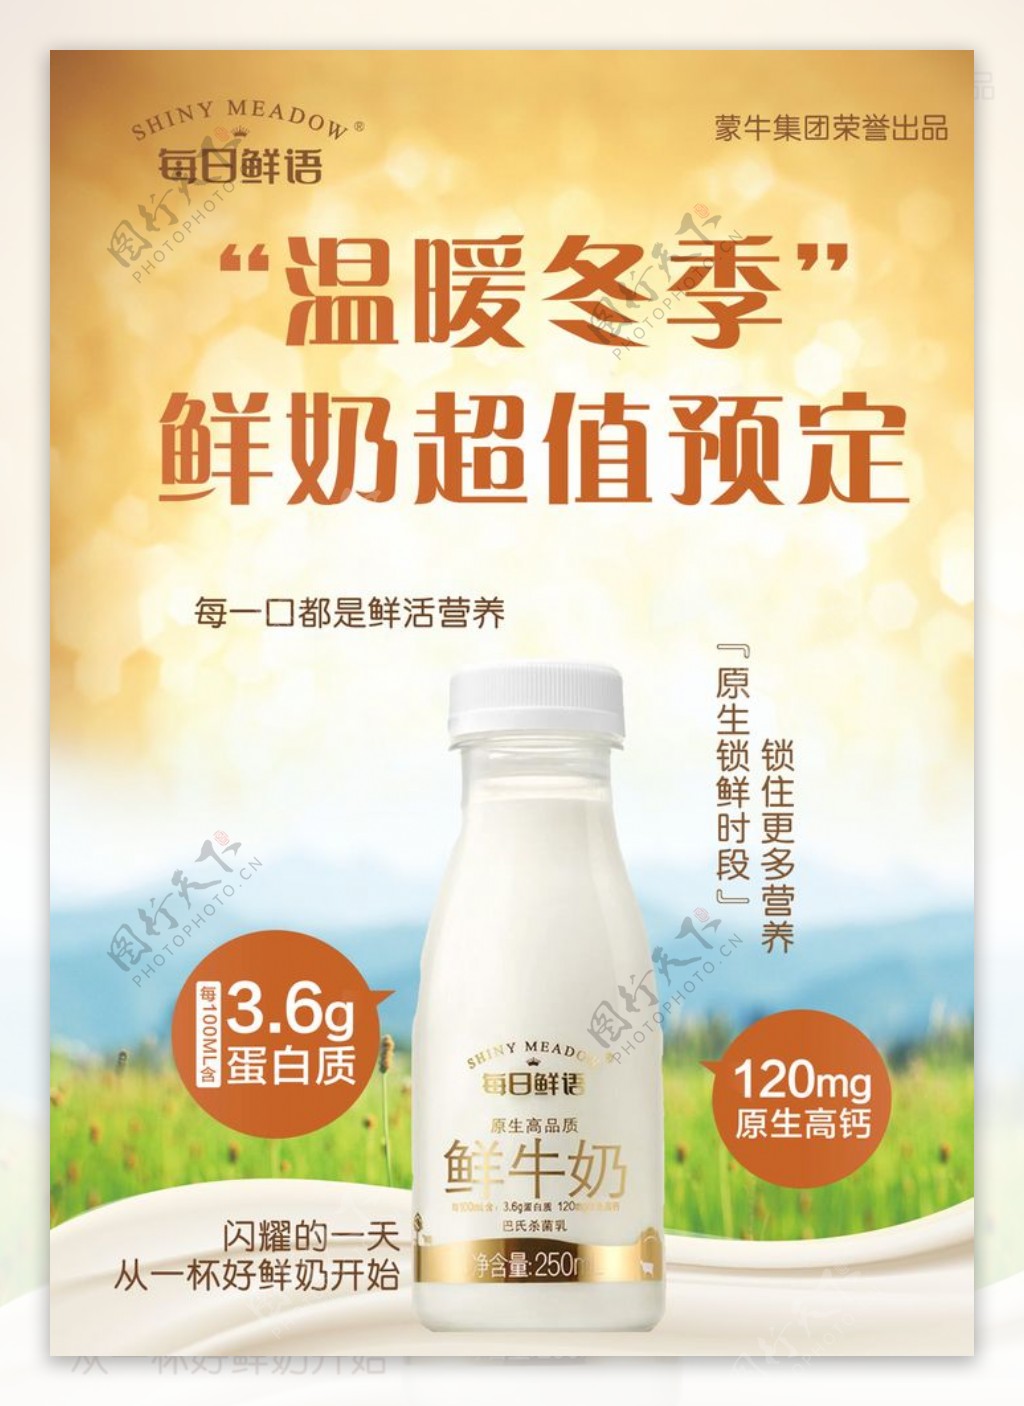 牛奶海报图片